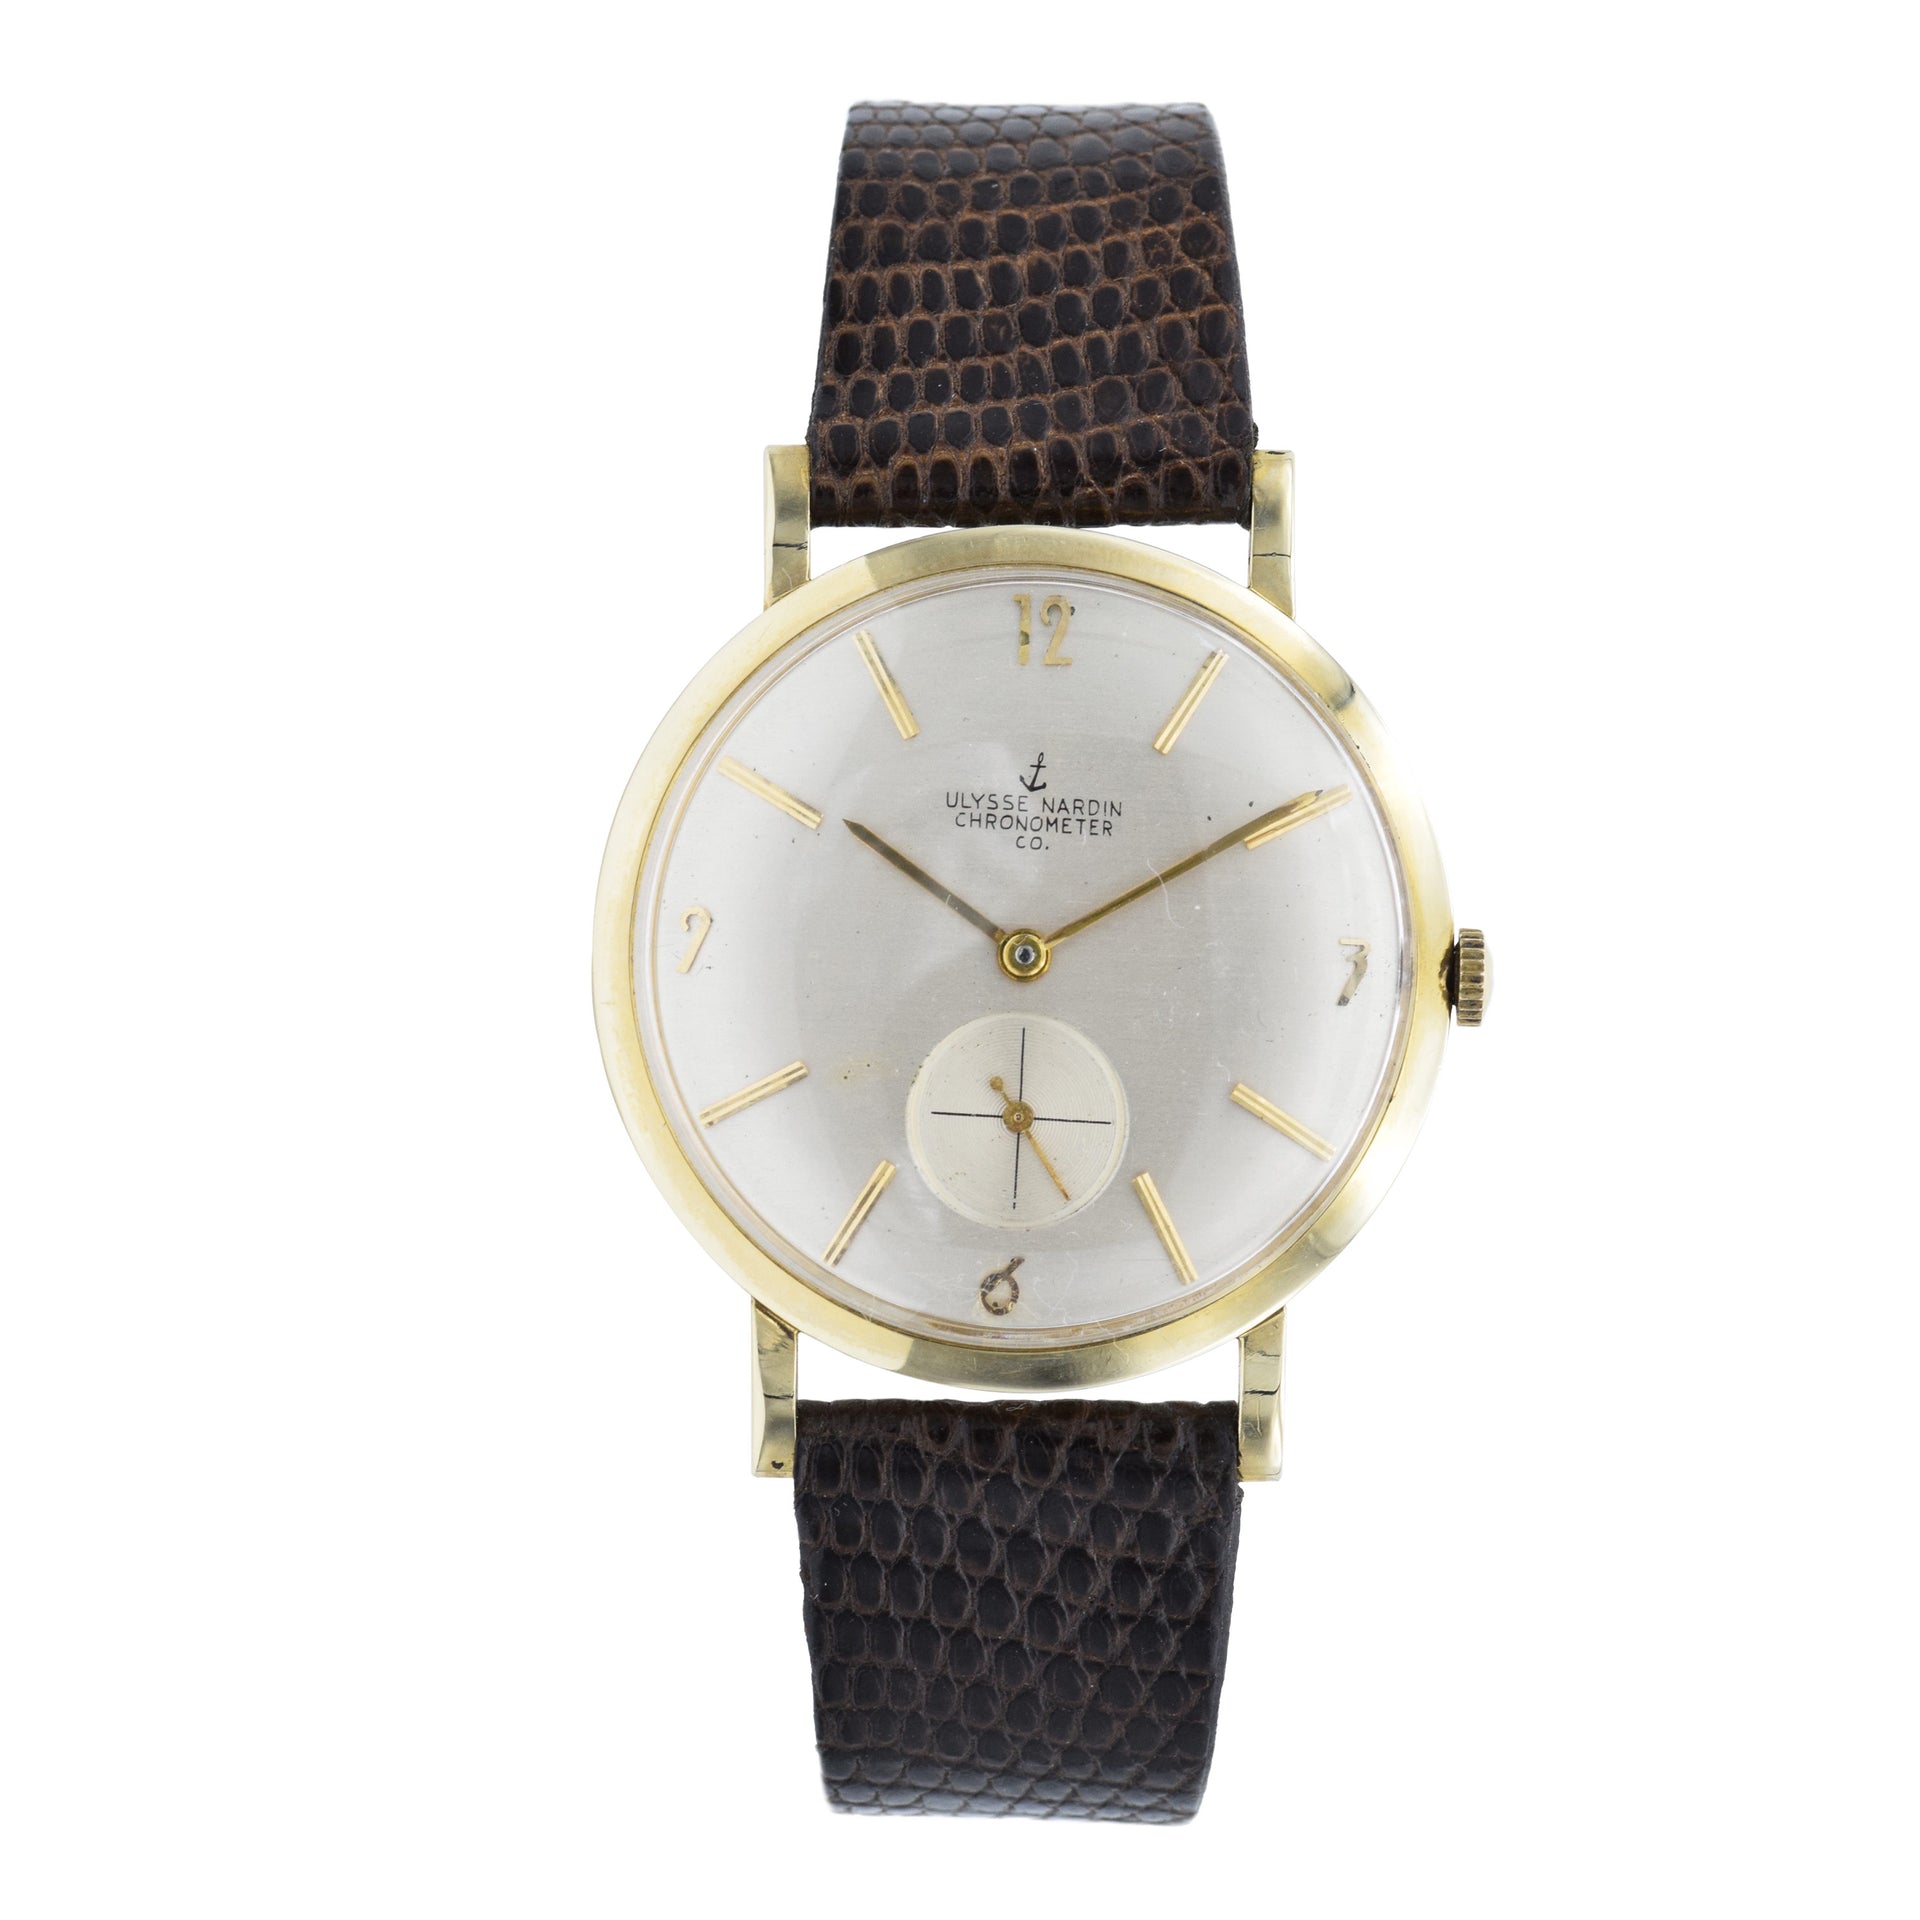 Vintage 1950s Ulysse Nardin Chronometer Watch